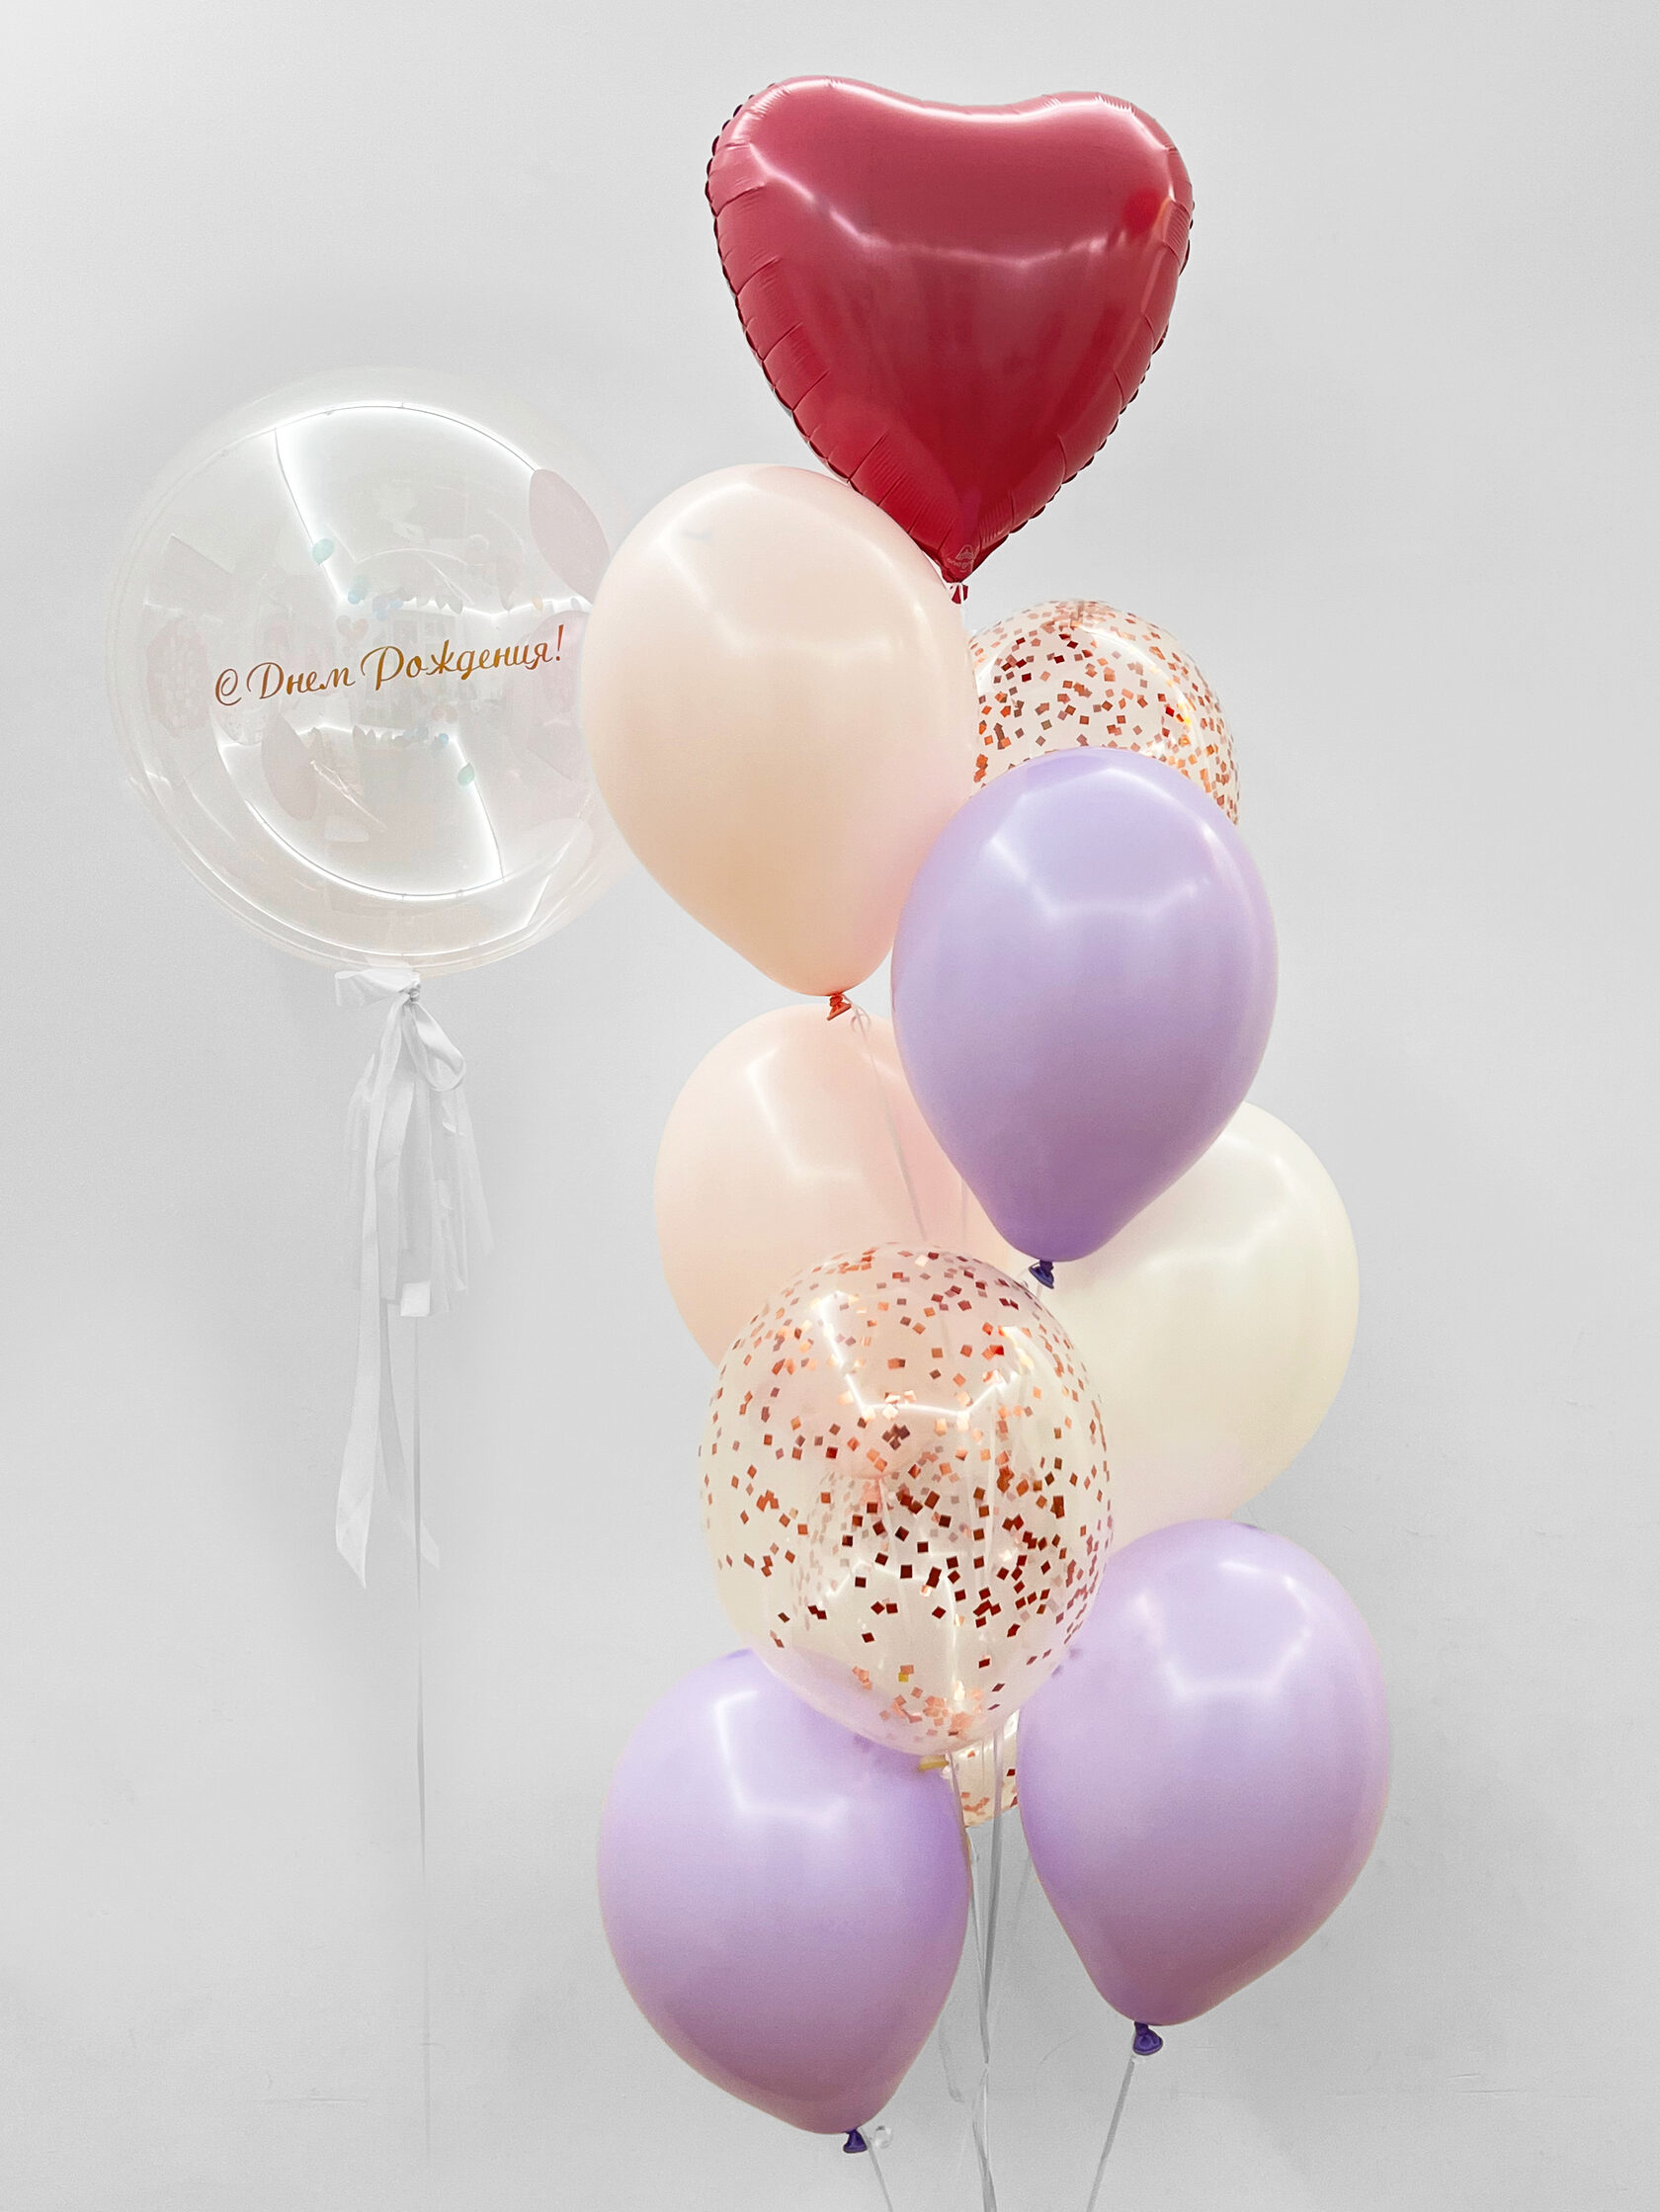 фонтан из воздушных шаров на день рождения пиво Фонтан из шаров «Парфе» - 10 шаров